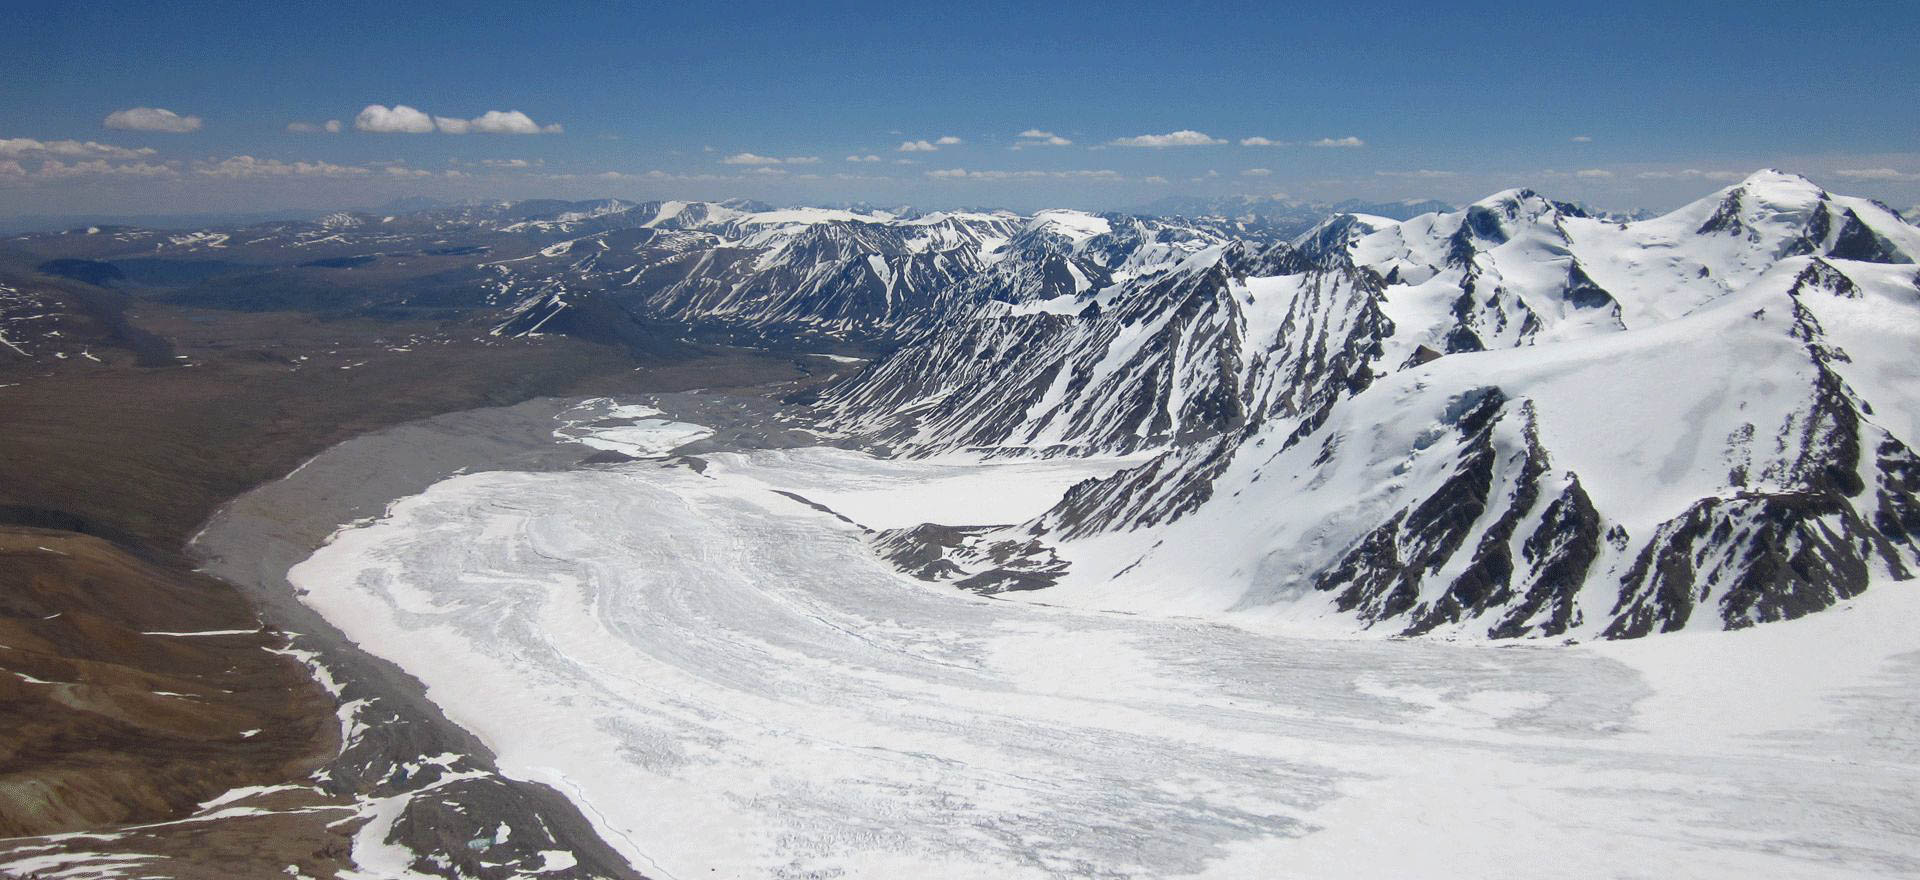 Glacier in the Altai Mountains - Mongolia tours